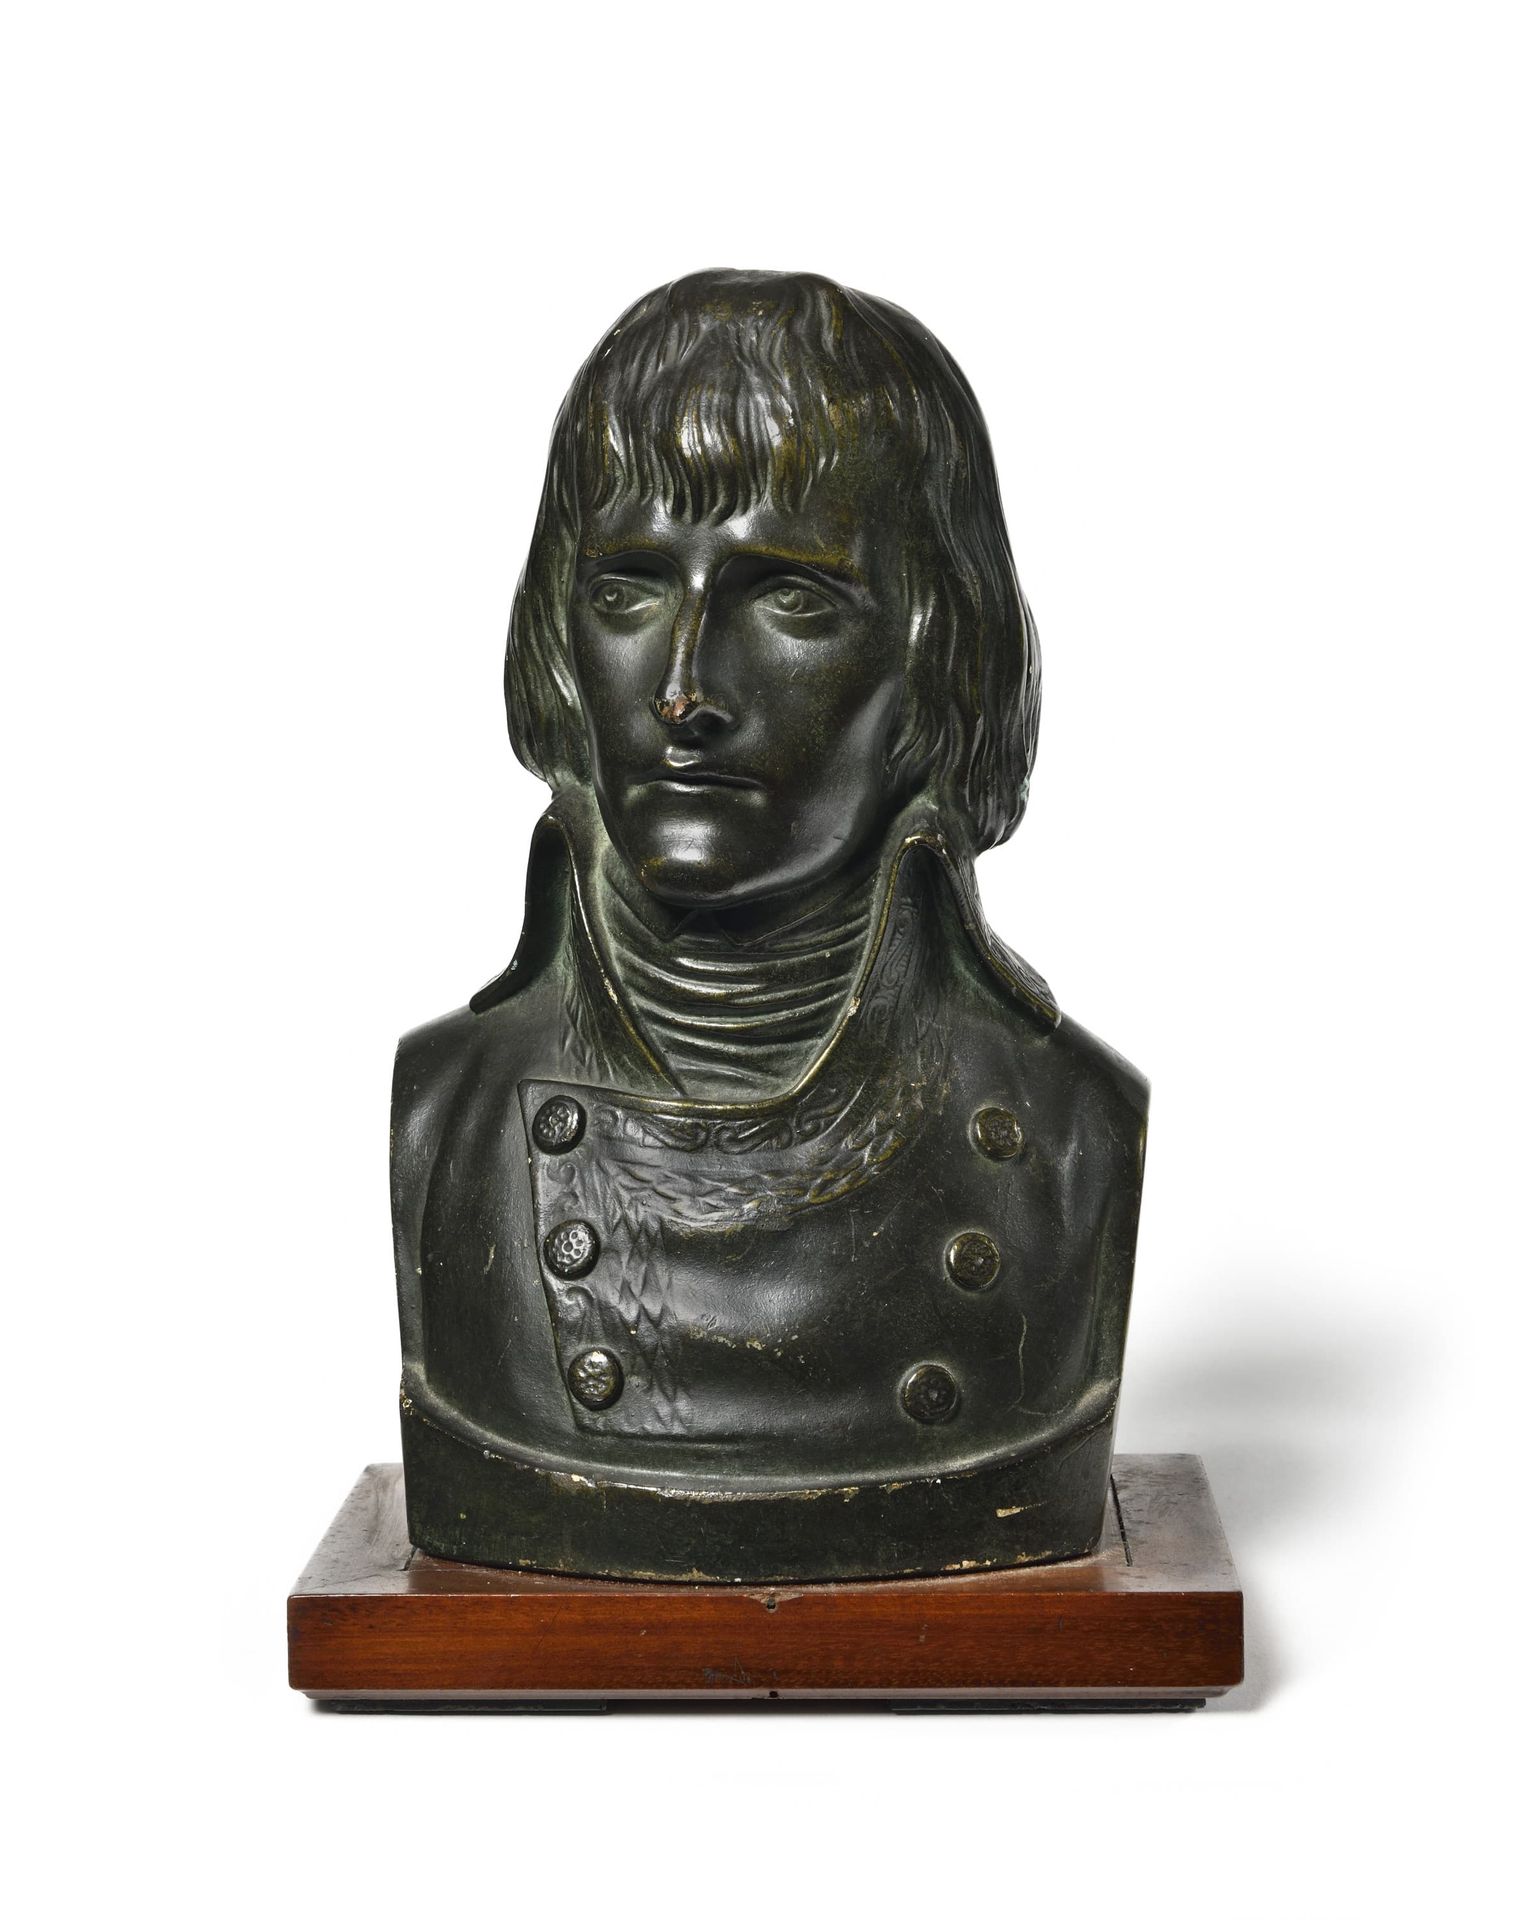 Null "波拿巴第一执政官"。
带有青铜光泽的石膏半身像。
在一个木质底座上。
底座上的高度：26厘米。
19世纪。